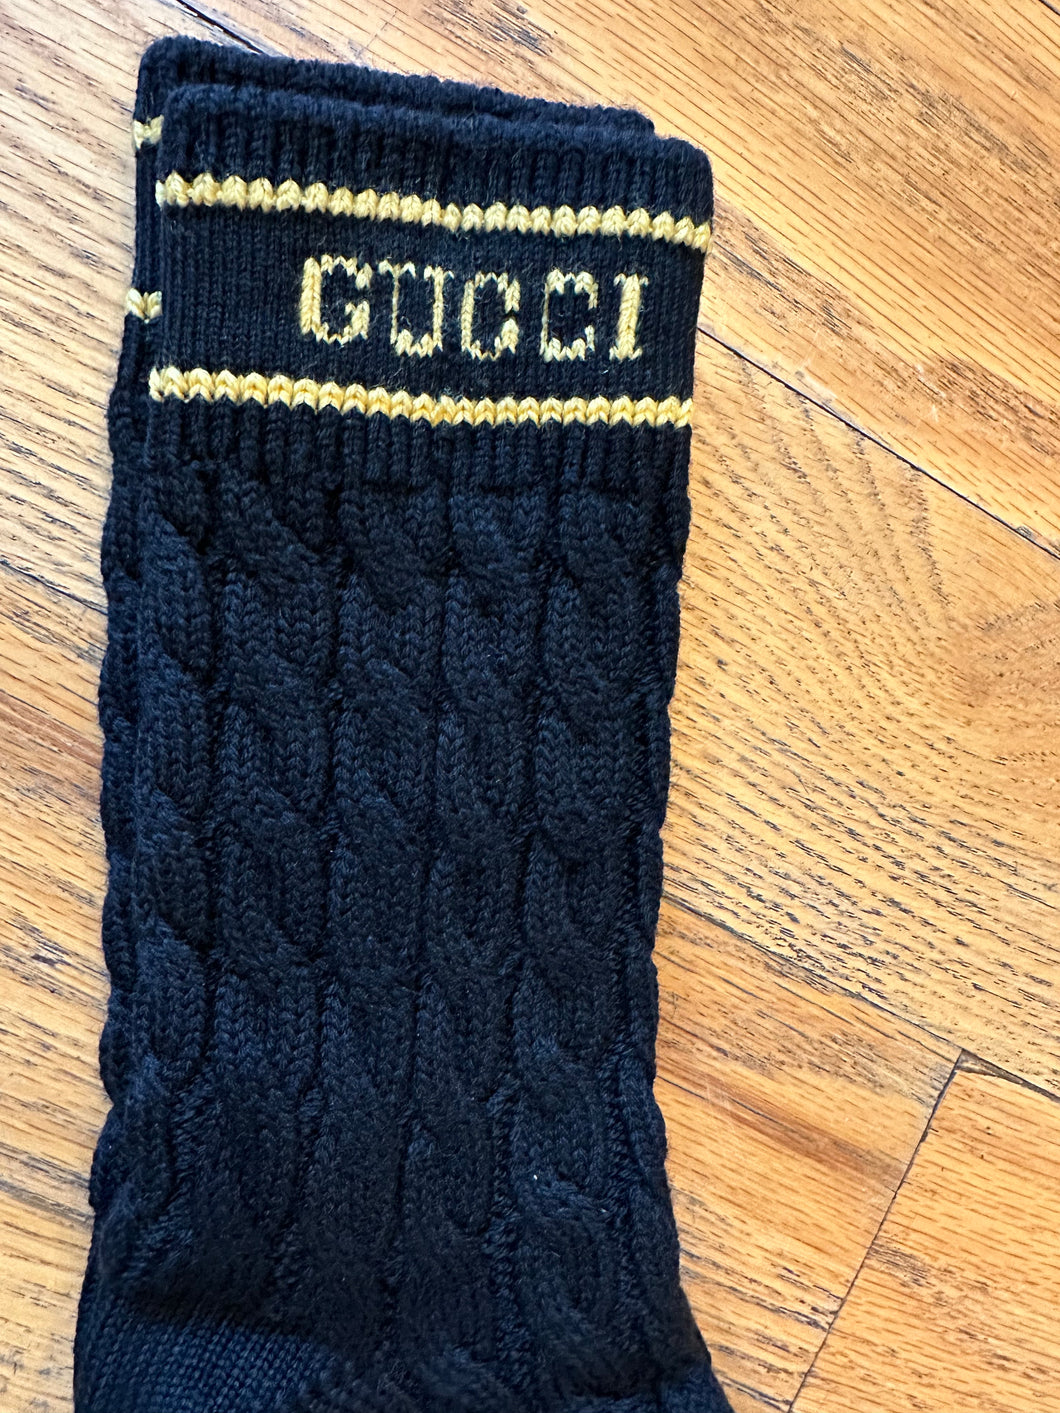 Gucci Black Wool Knit Socks